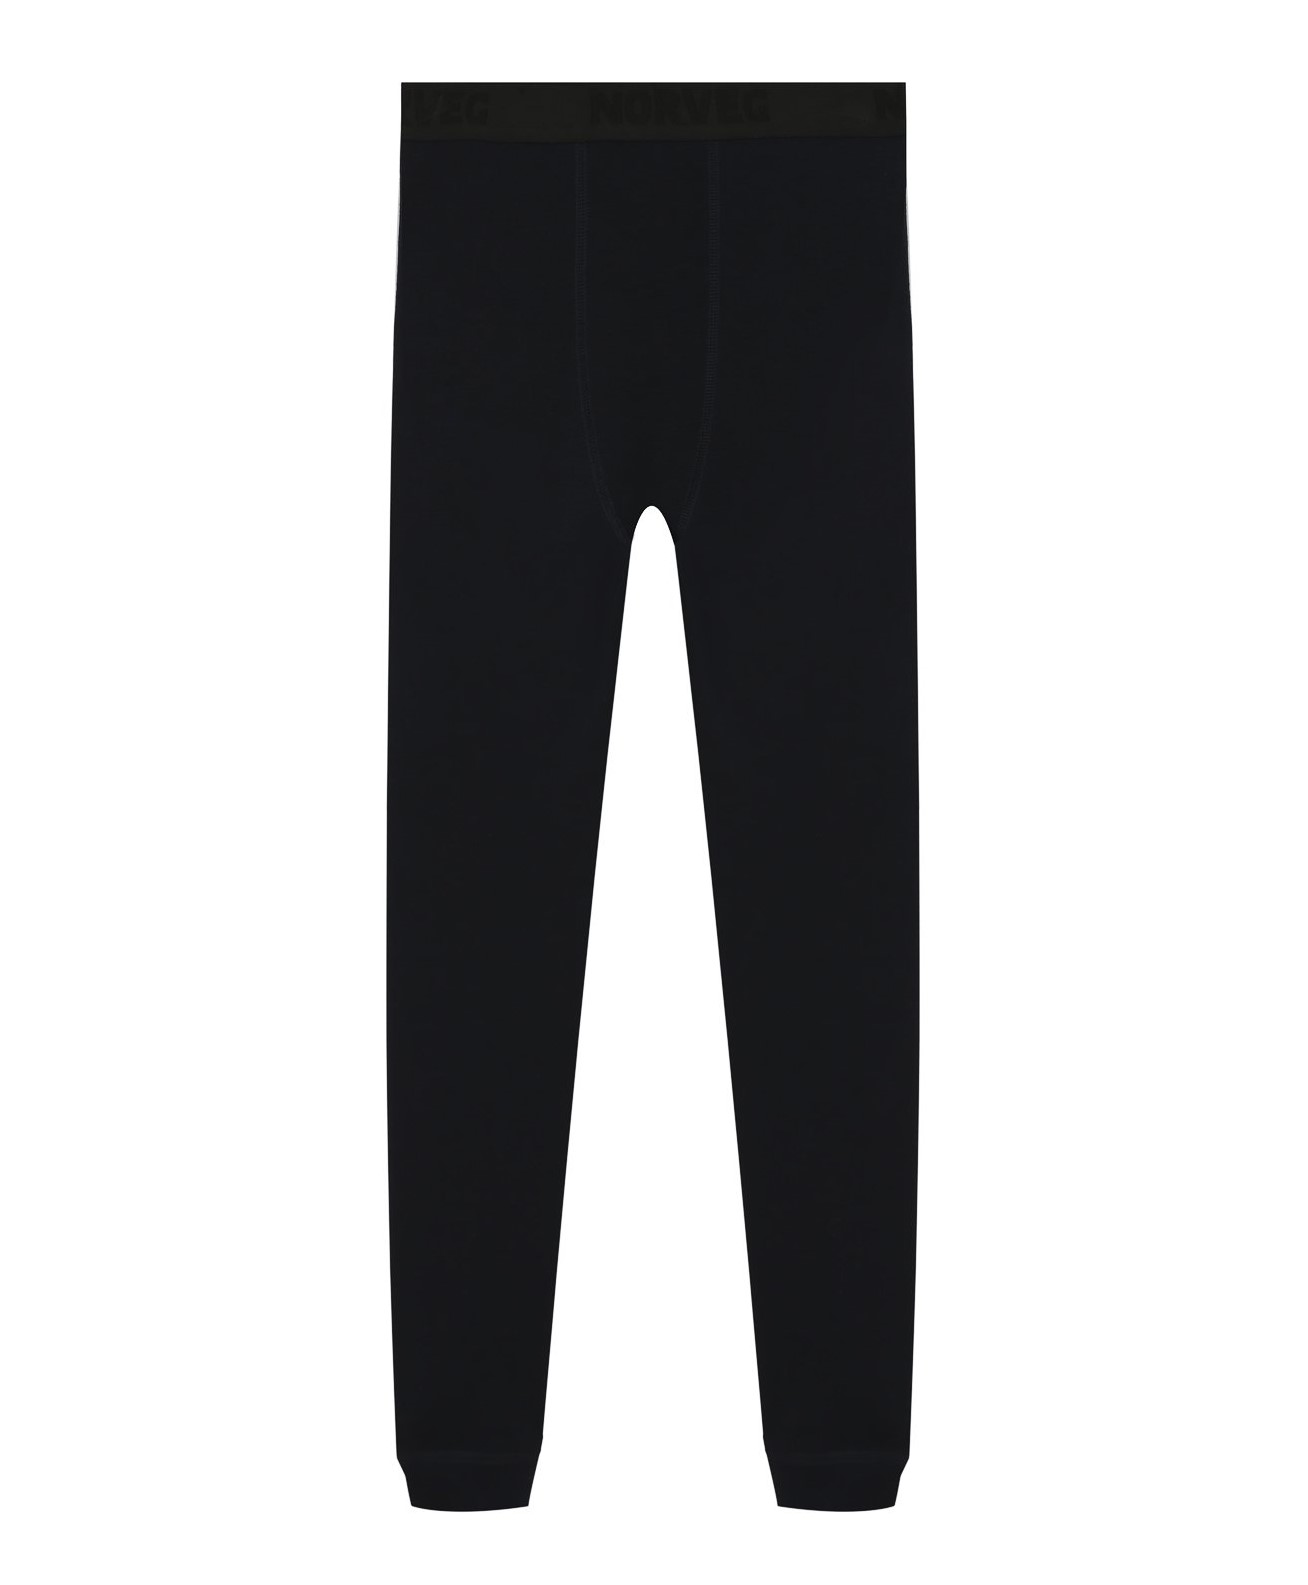 Термобелье брюки для мальчиков Norveg Soft Teens Jr: купить в Иркутске по  цене 3799.00 в интернет-магазине Фанат